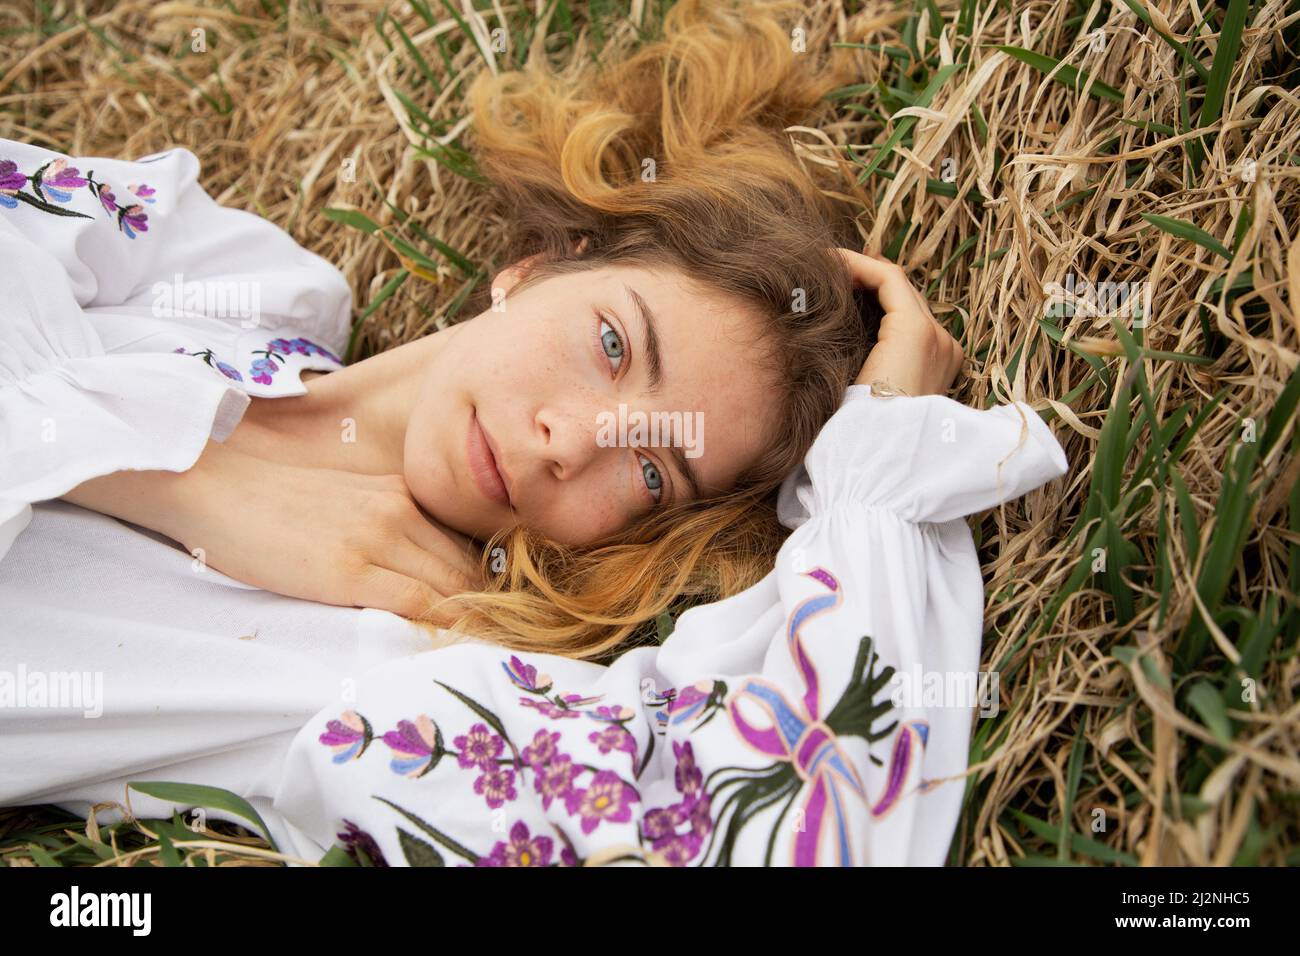 Belle fille de 17-19 ans dans une chemise traditionnelle ukrainienne brodée se trouve dans l'herbe sèche. Vue de dessus. Je suis ukrainien. Tenez-vous avec l'Ukraine Banque D'Images